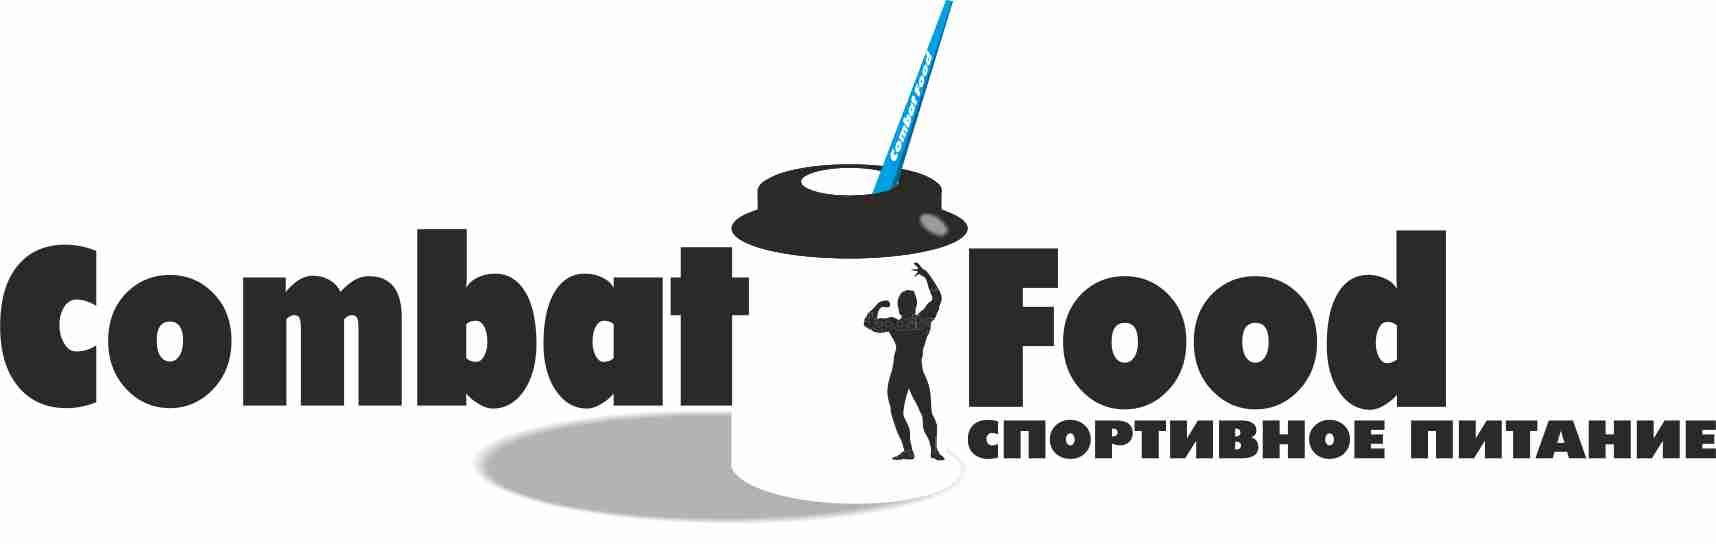 Логотип для интернет-магазина спортивного питания - дизайнер norma-art